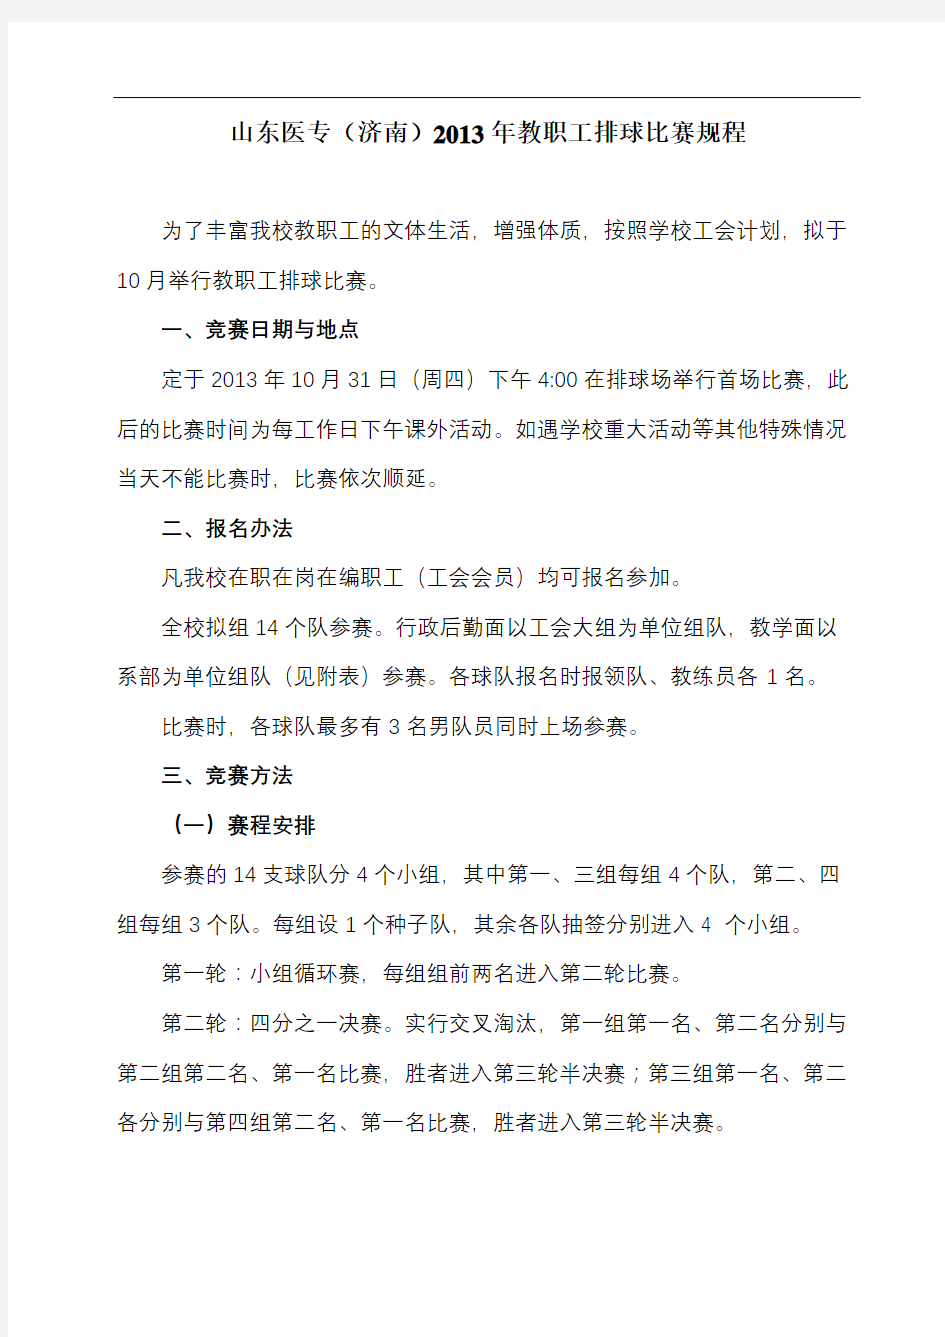 山东医专(济南)2013年教职工排球比赛规程【模板】